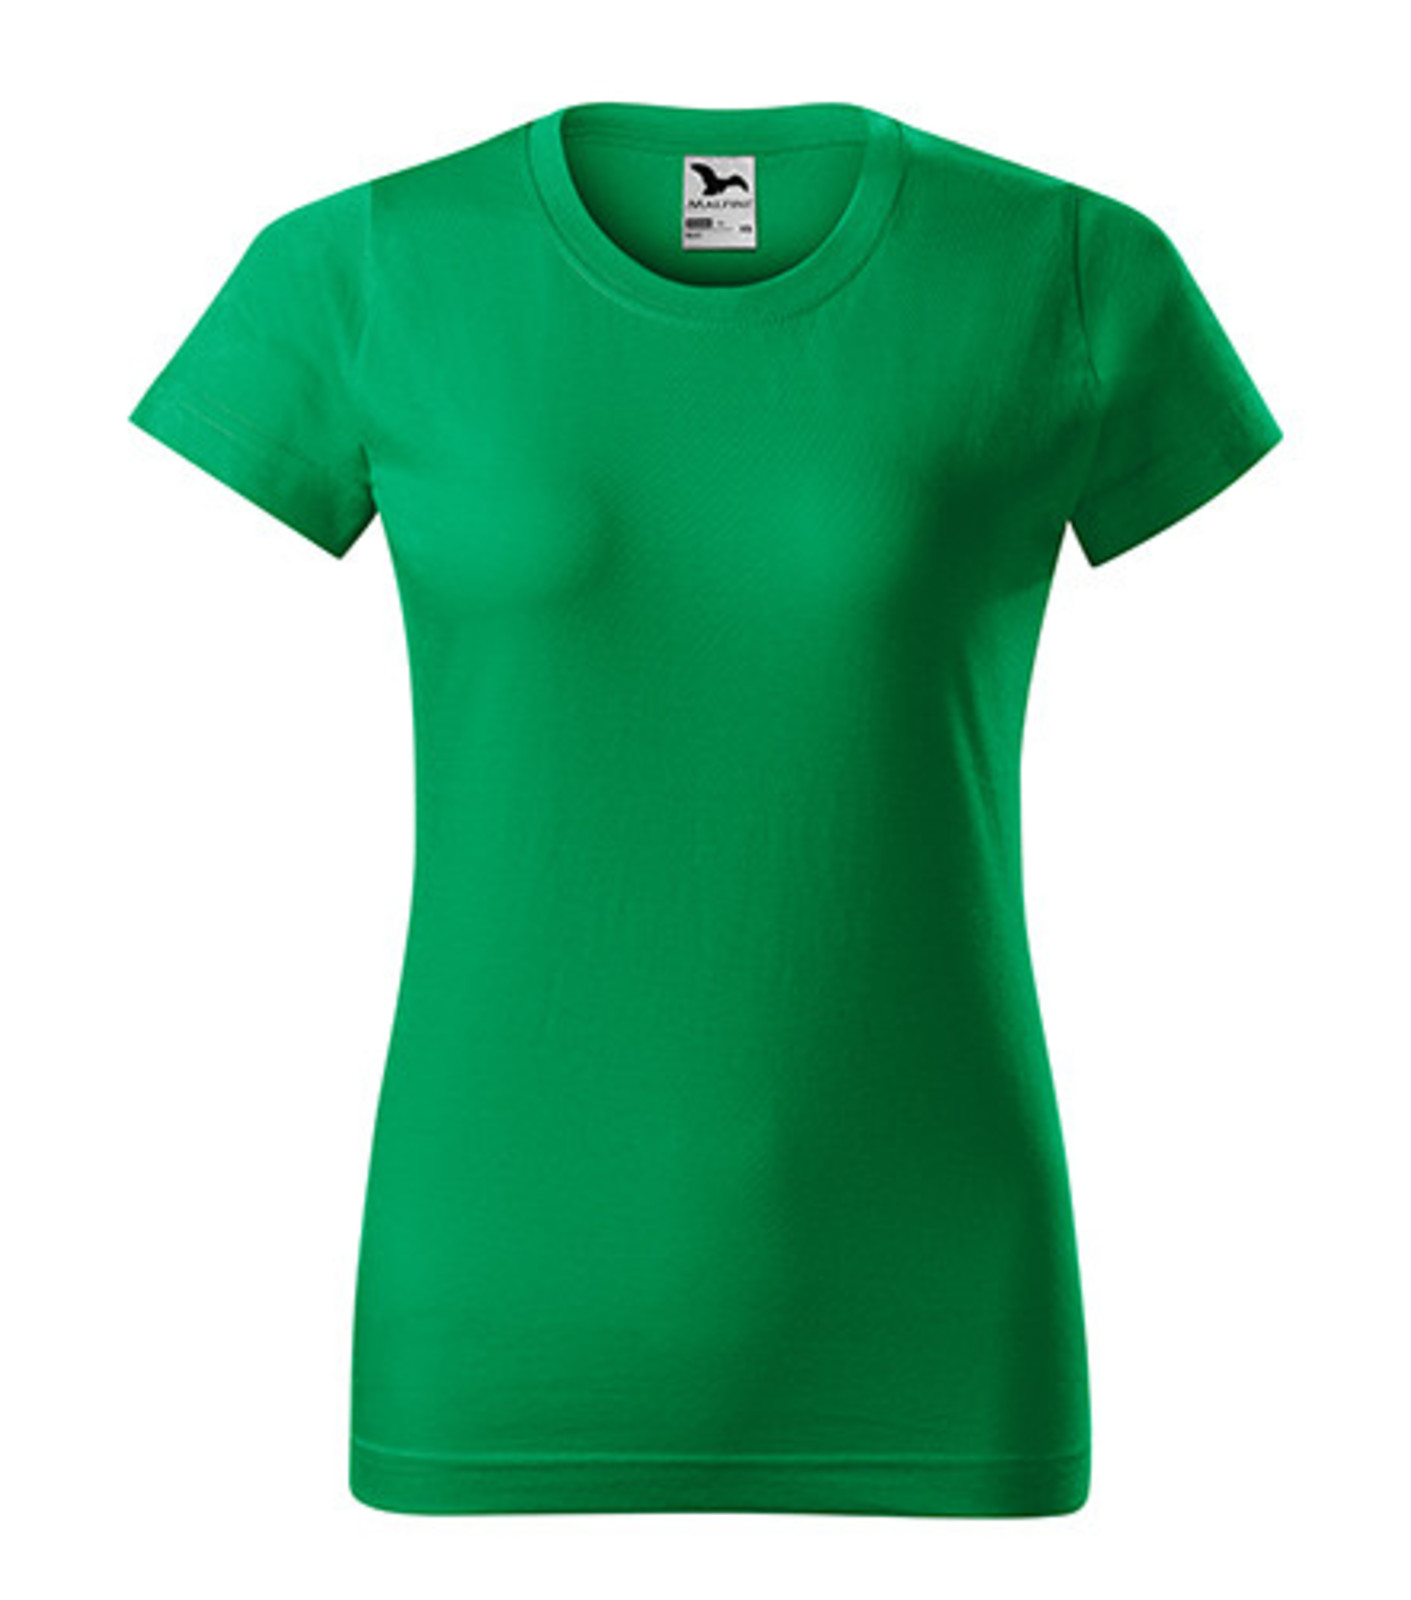 Dámske tričko Malfini Basic 134 - veľkosť: L, farba: trávová zelená